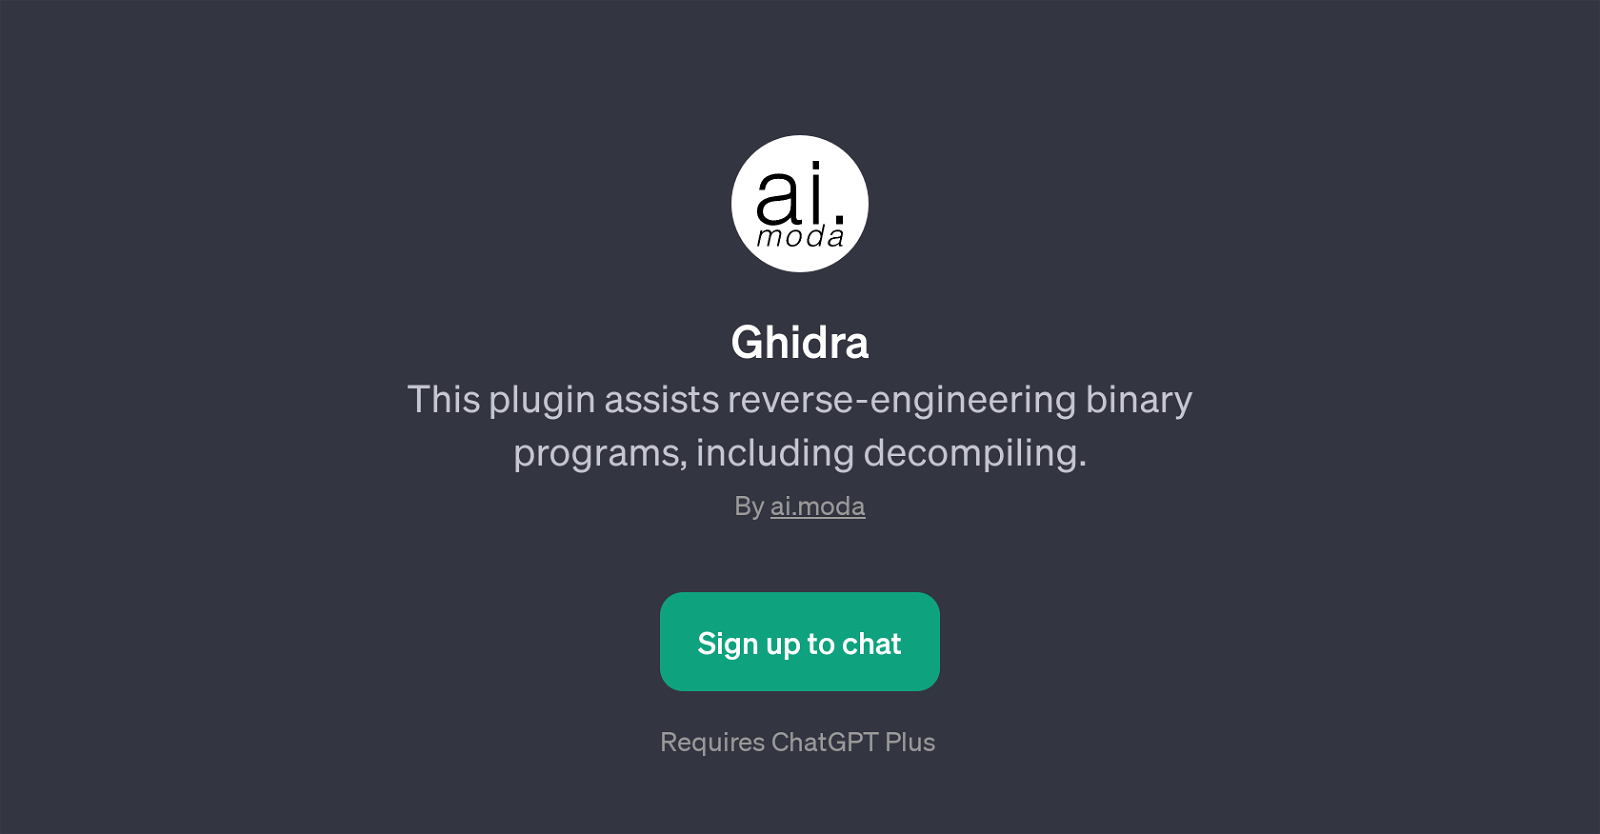 Ghidra website